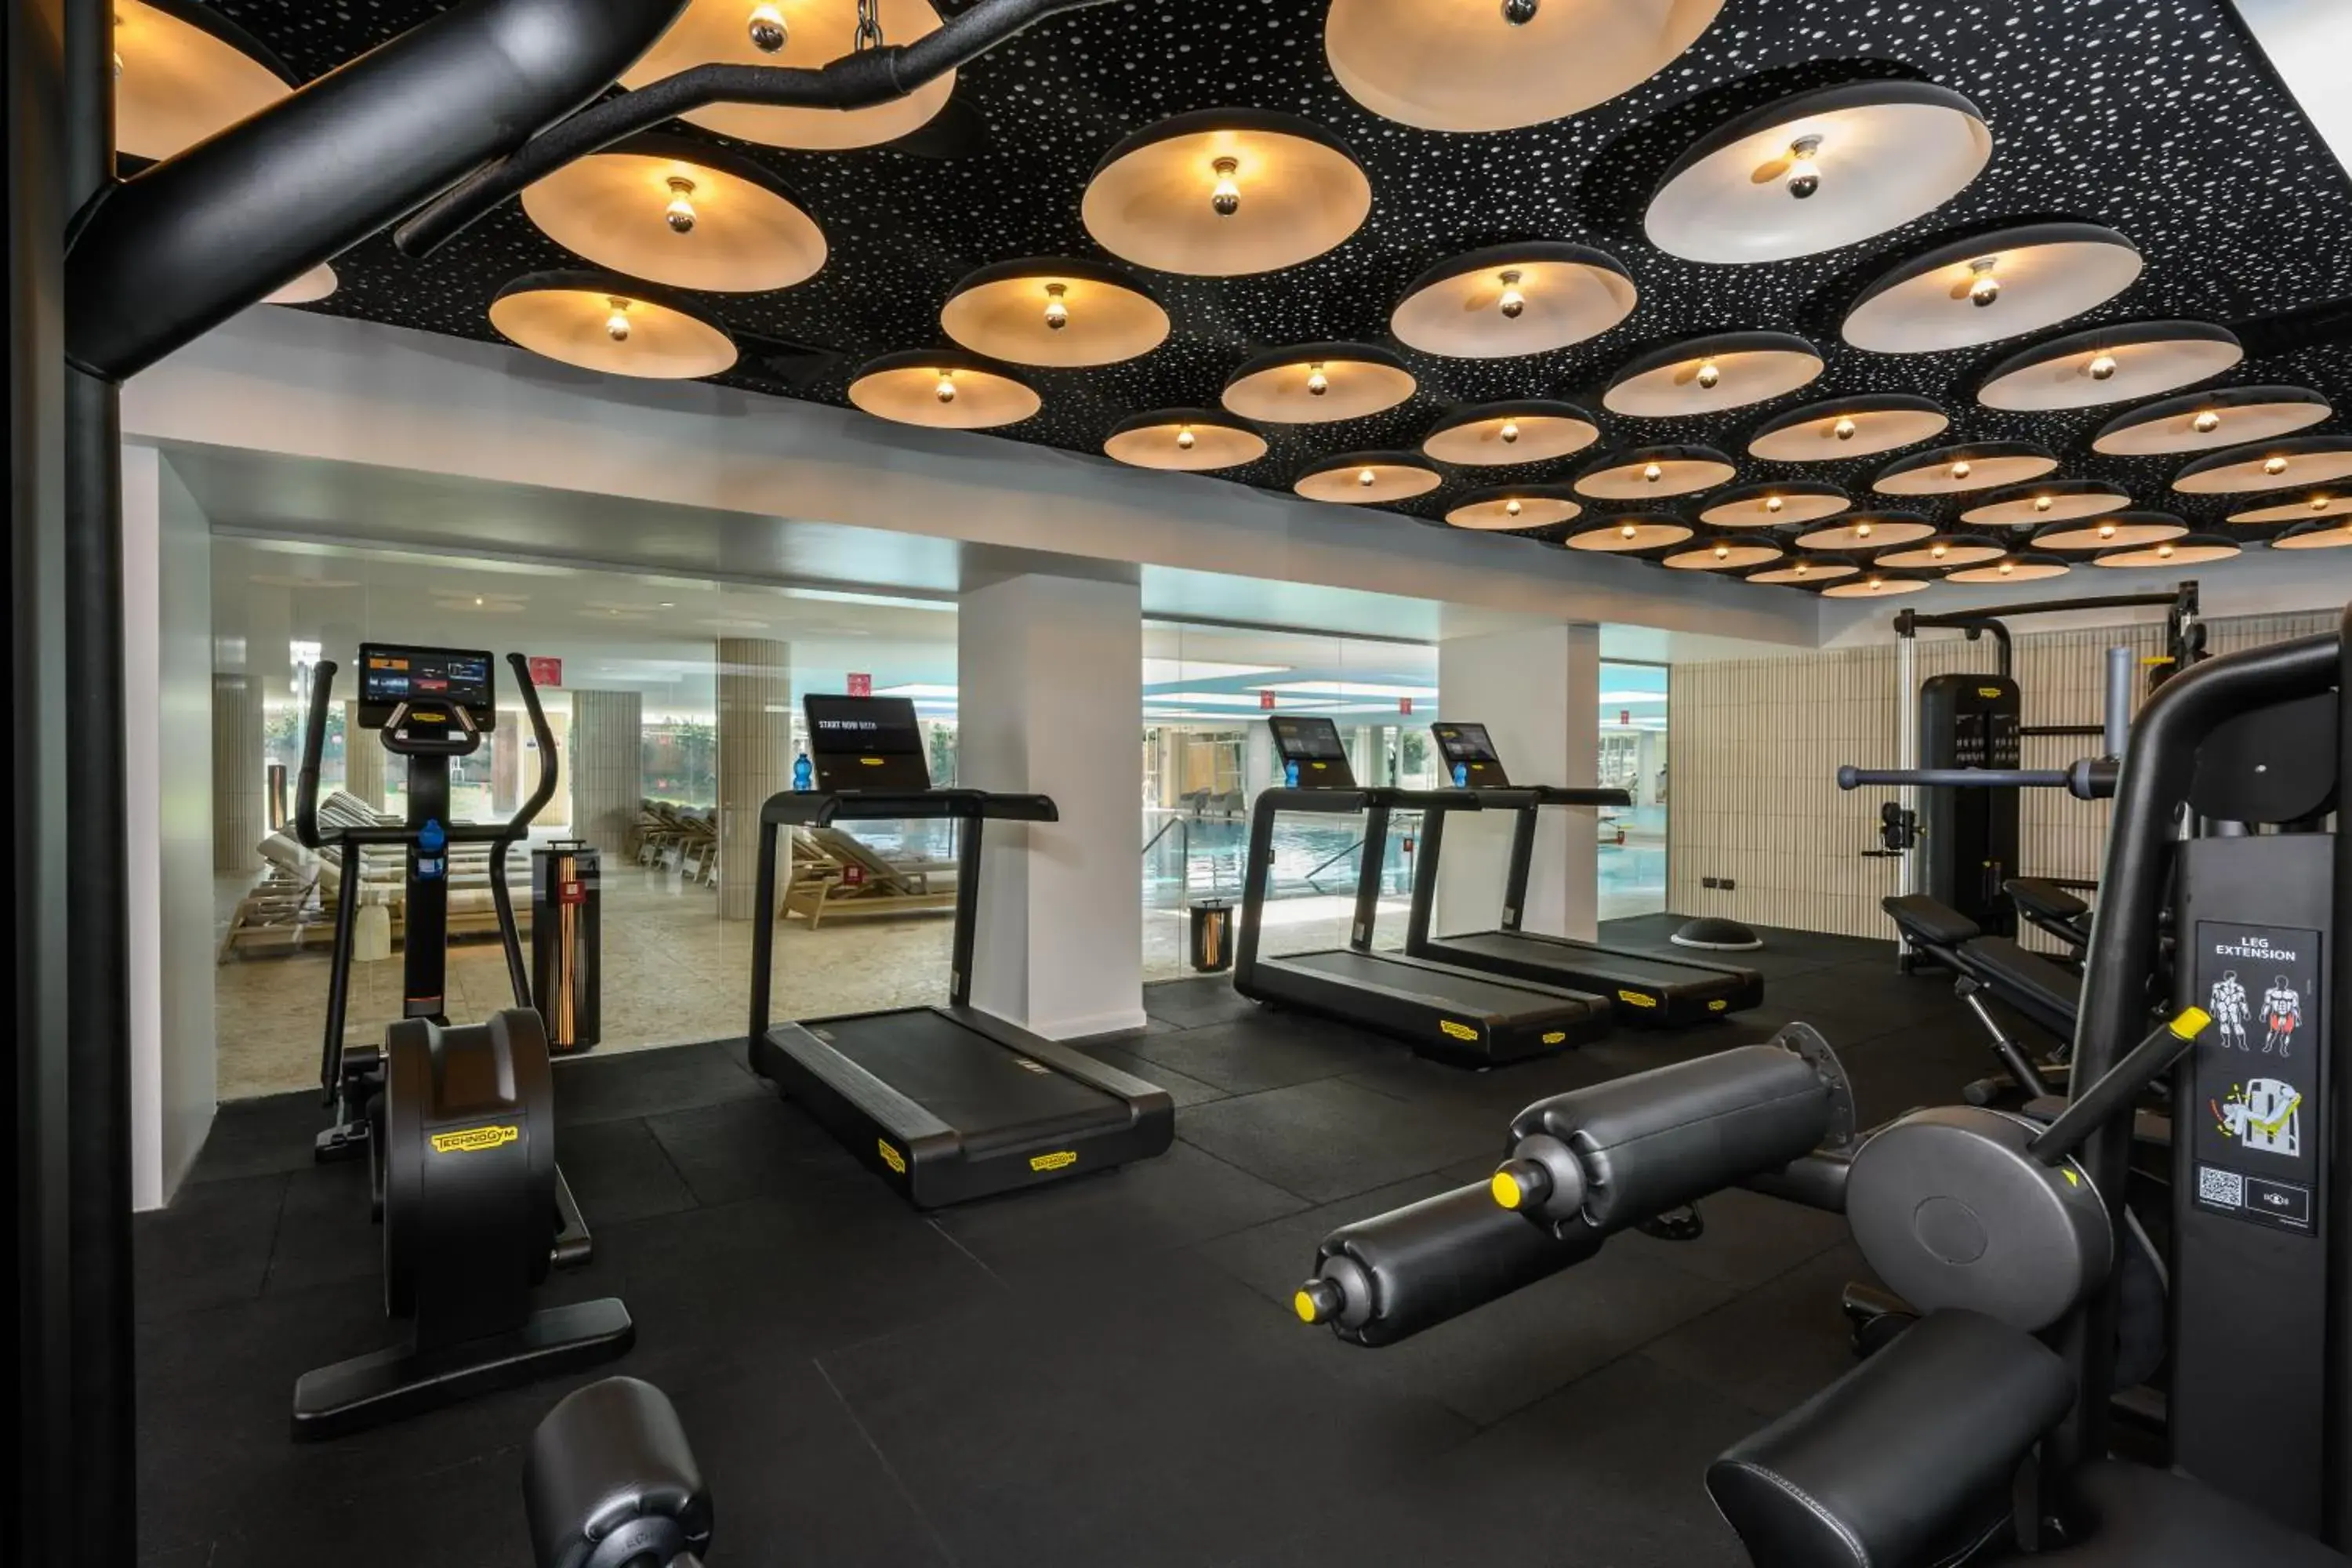 Fitness centre/facilities, Fitness Center/Facilities in LEONARDO PLAZA HAIFA